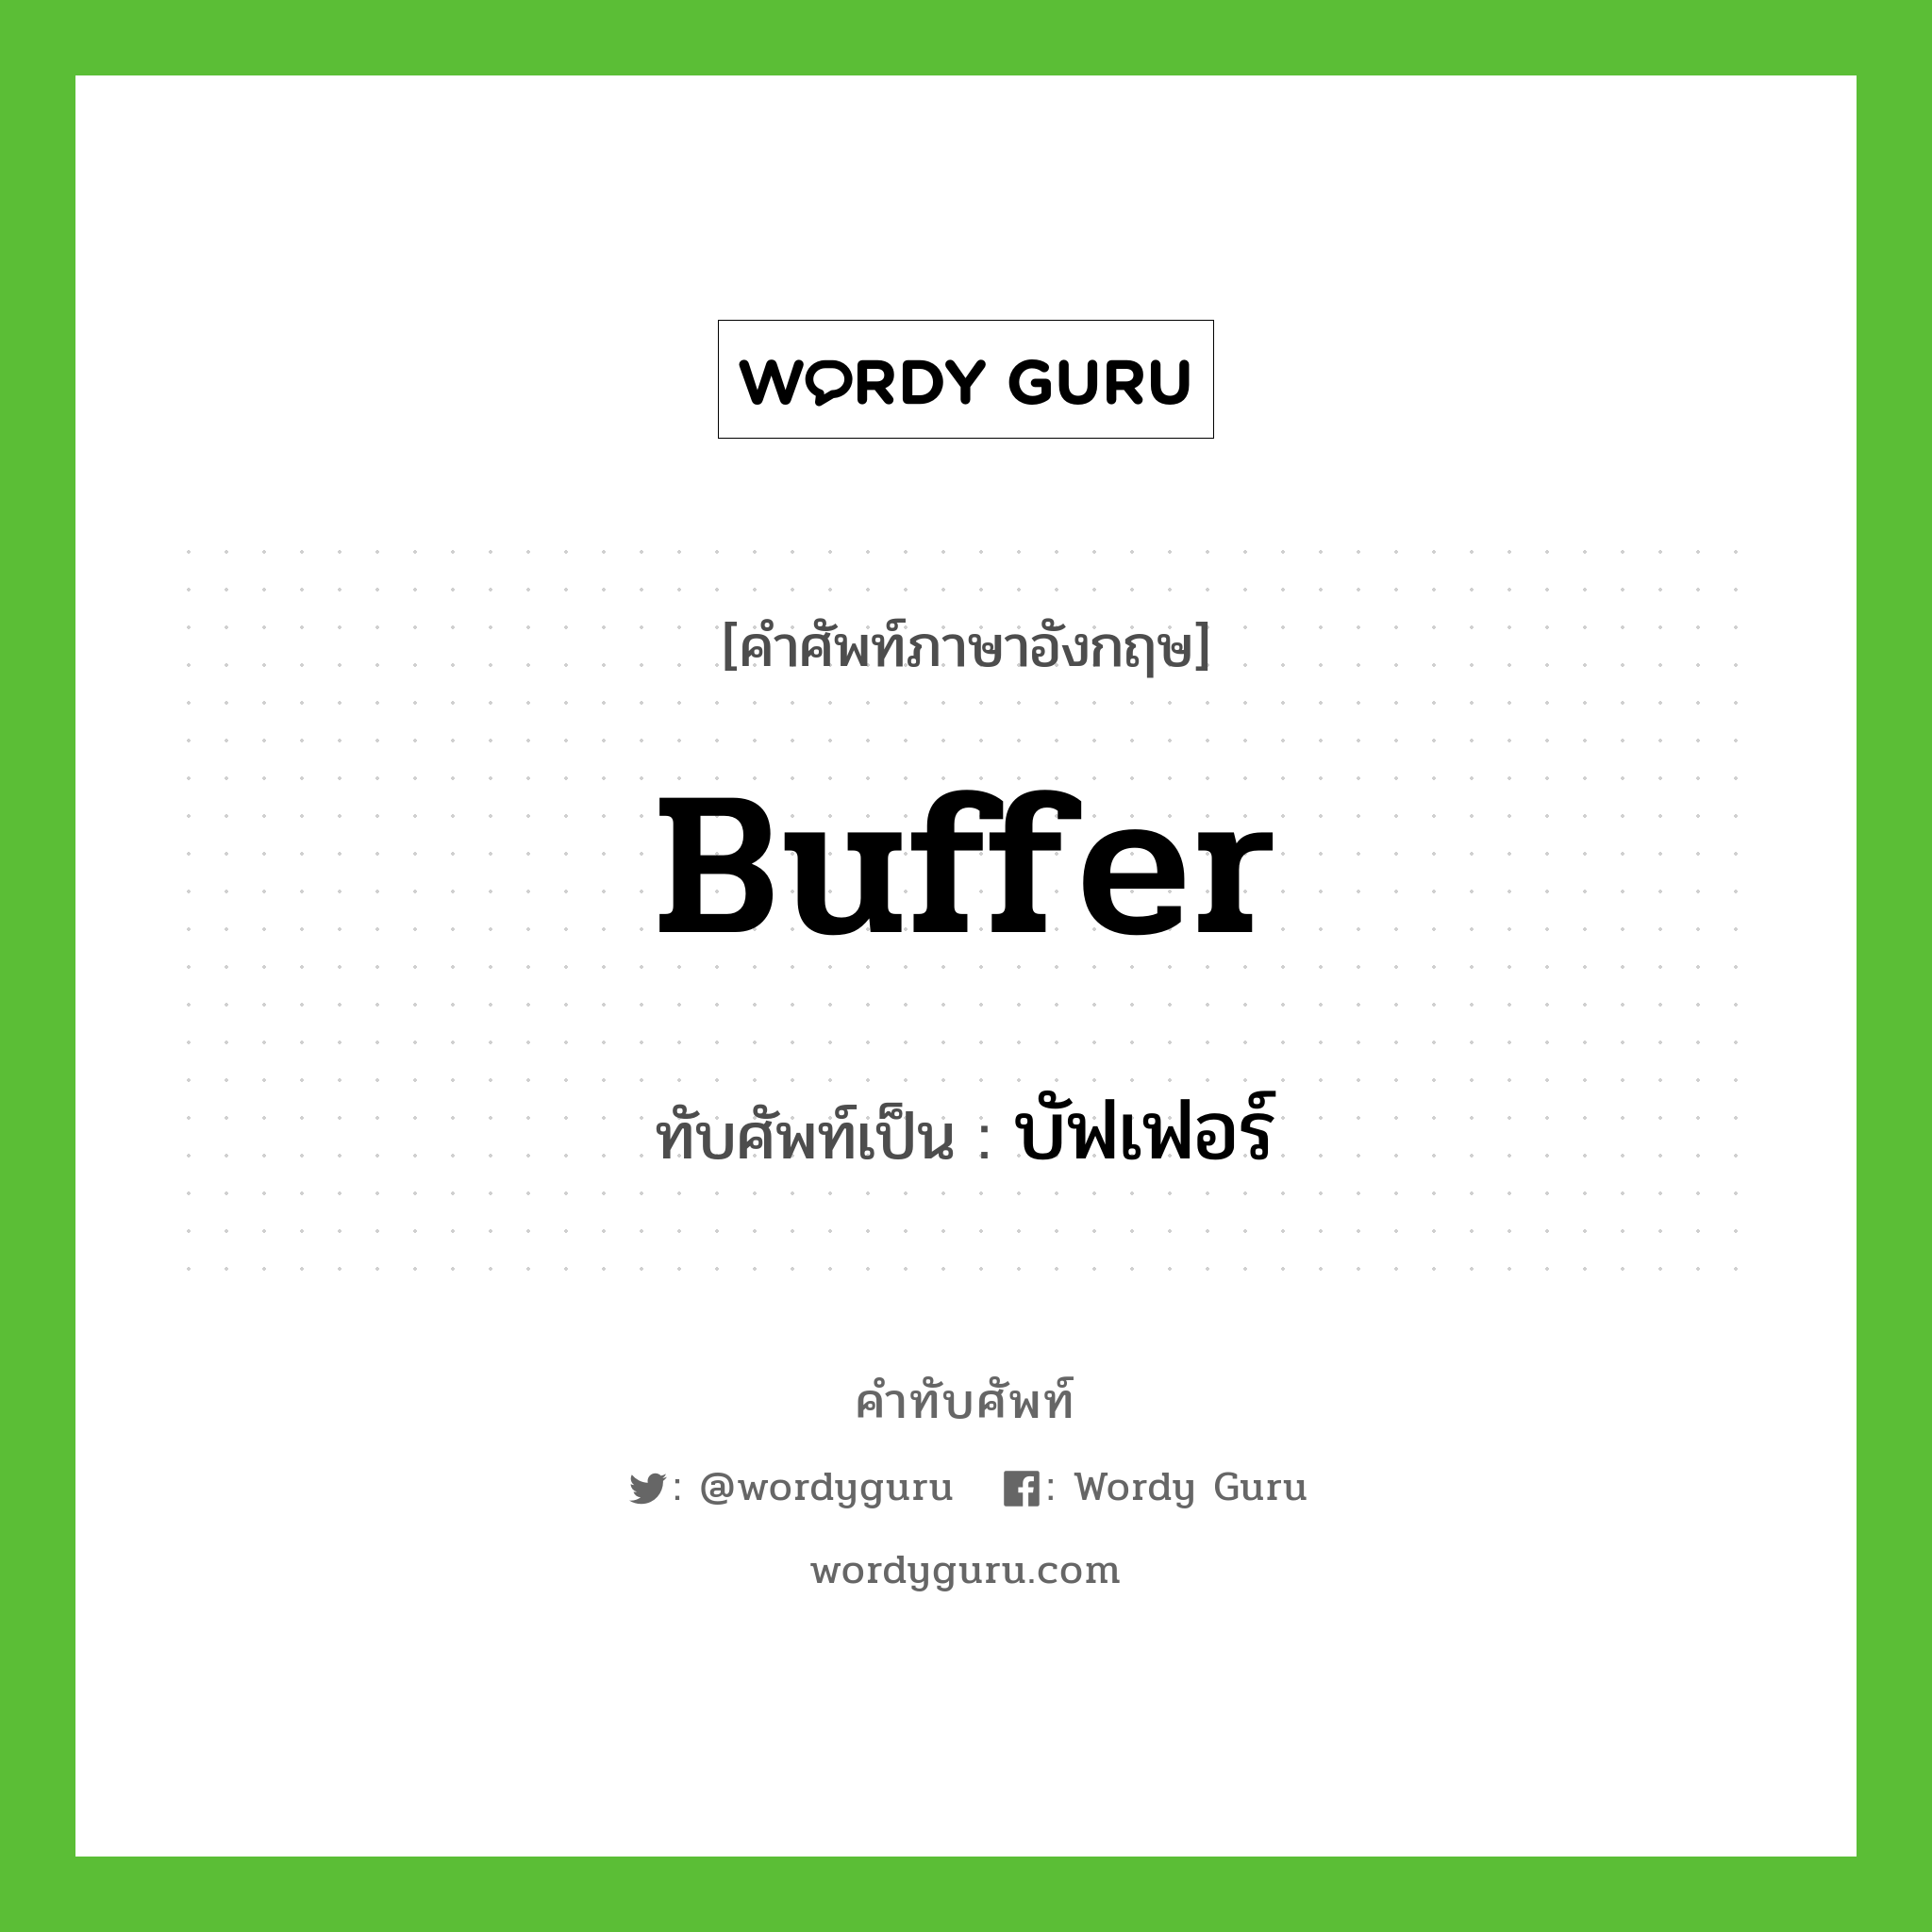 buffer เขียนเป็นคำไทยว่าอะไร?, คำศัพท์ภาษาอังกฤษ buffer ทับศัพท์เป็น บัฟเฟอร์